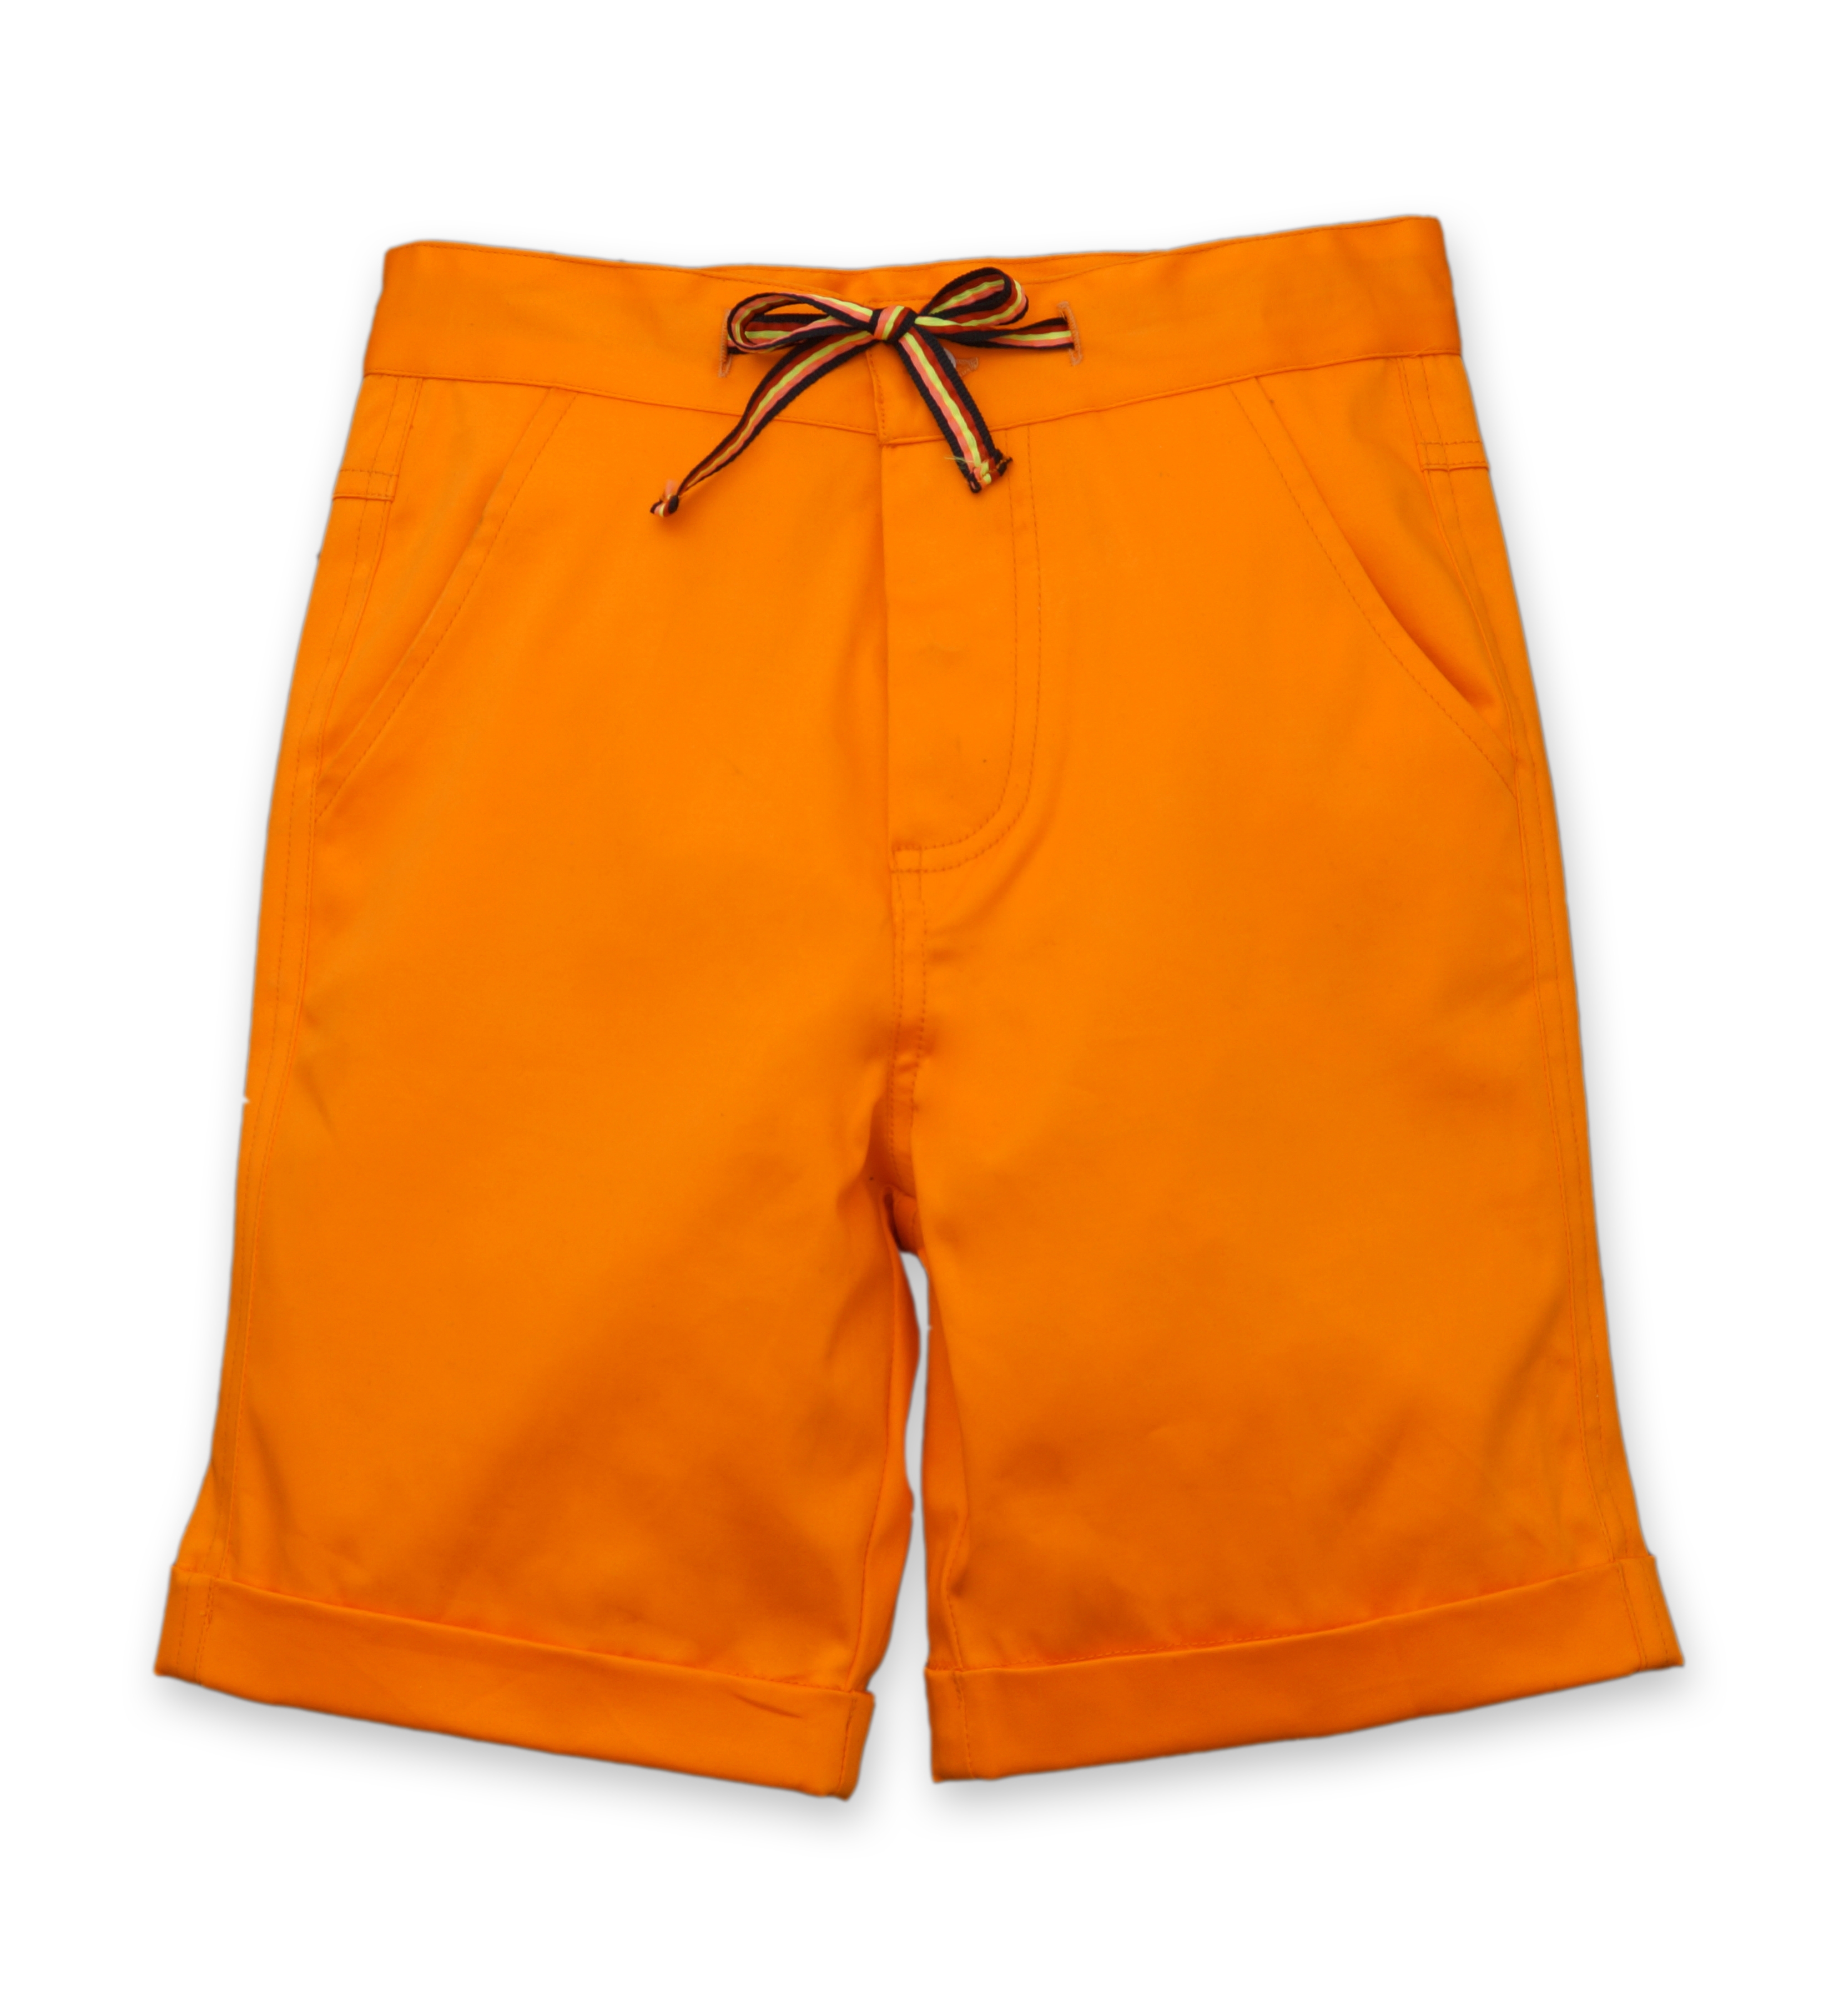 Popsicles Clothing | Popsicles Tangerine Shorts Regular Fit For Boys